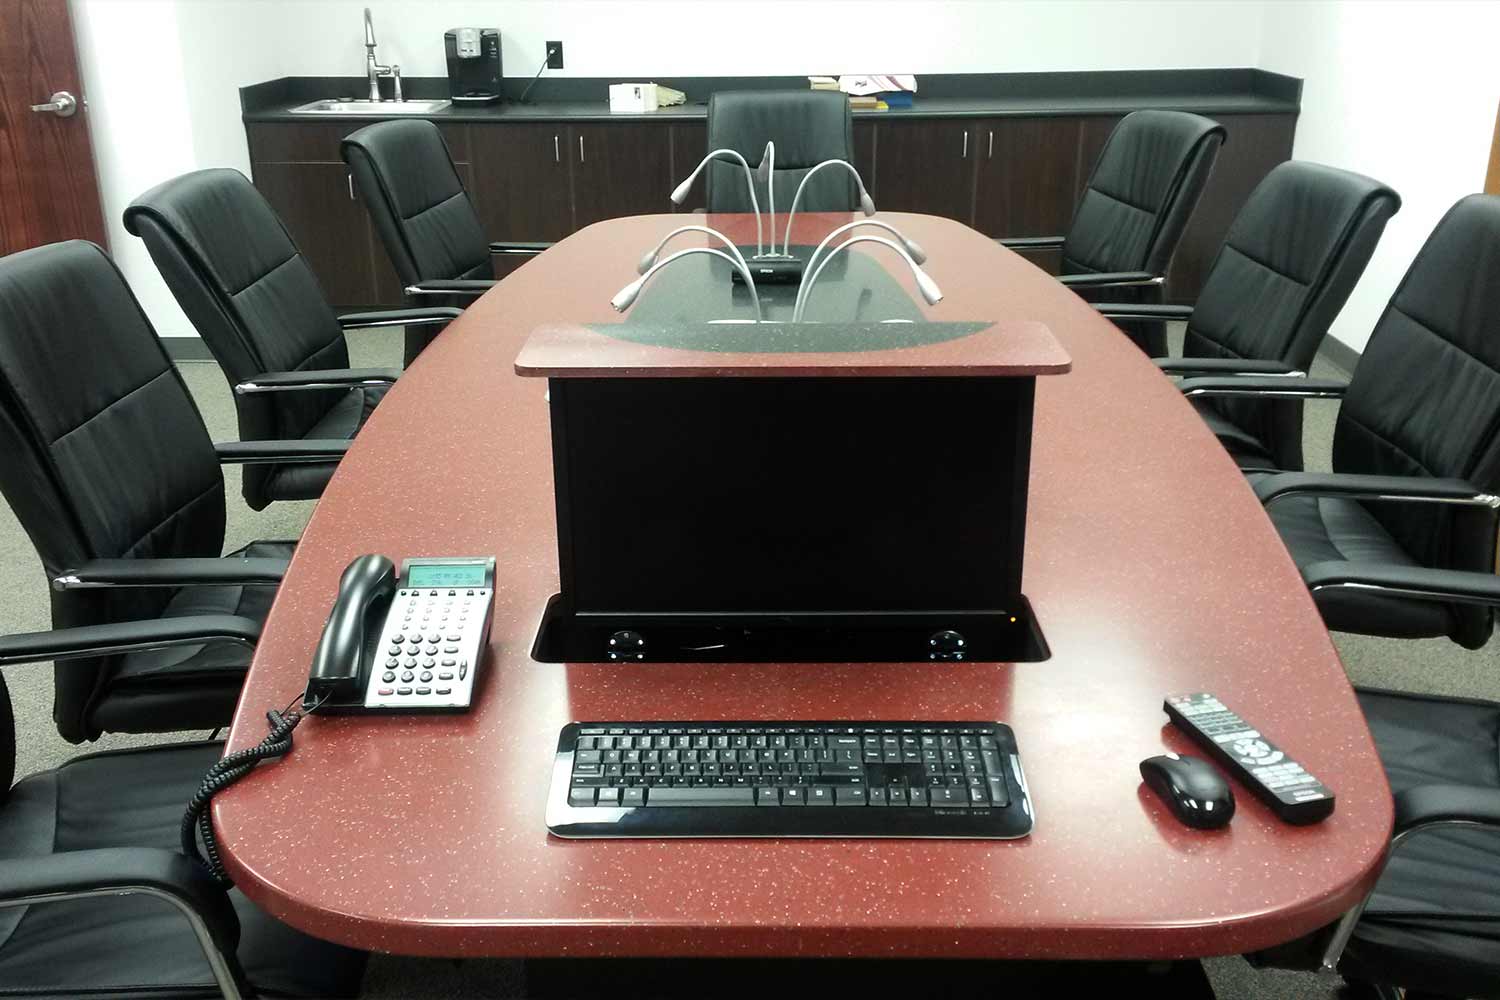 Conference Room Desk Pop Up